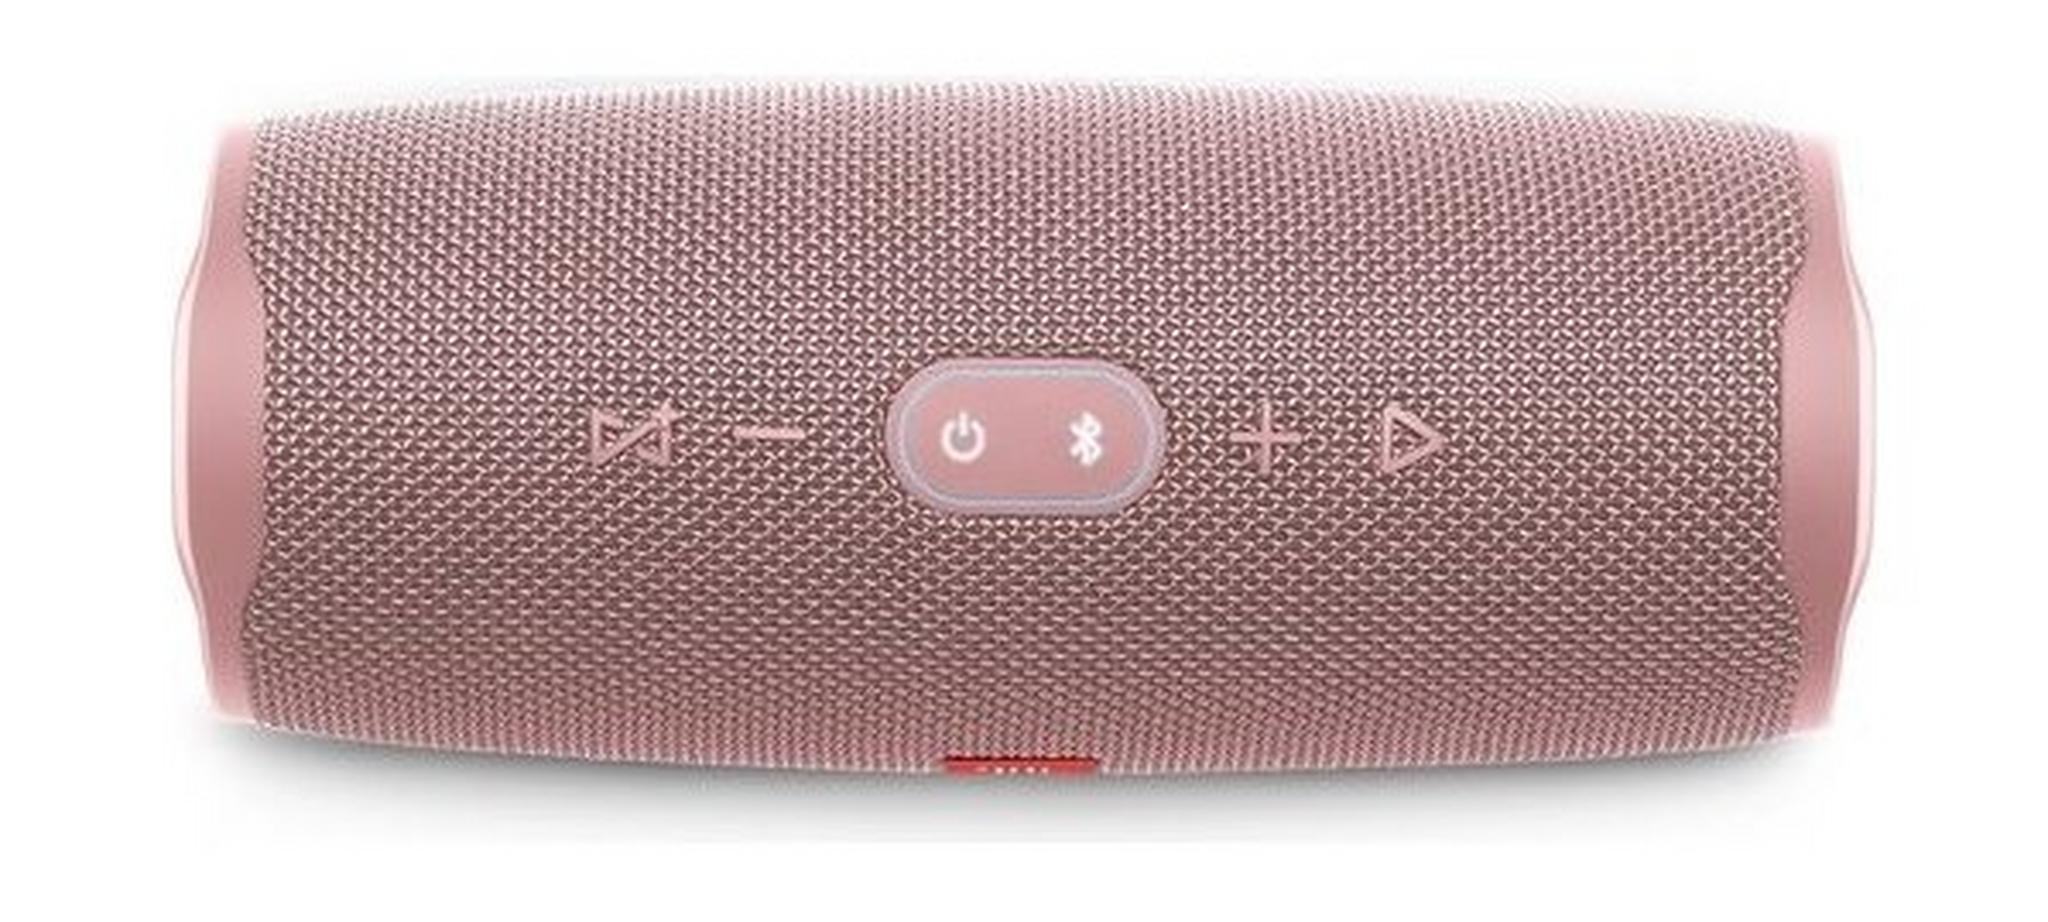 JBL Charge 4 Waterproof Portable Bluetooth Speaker - Pink